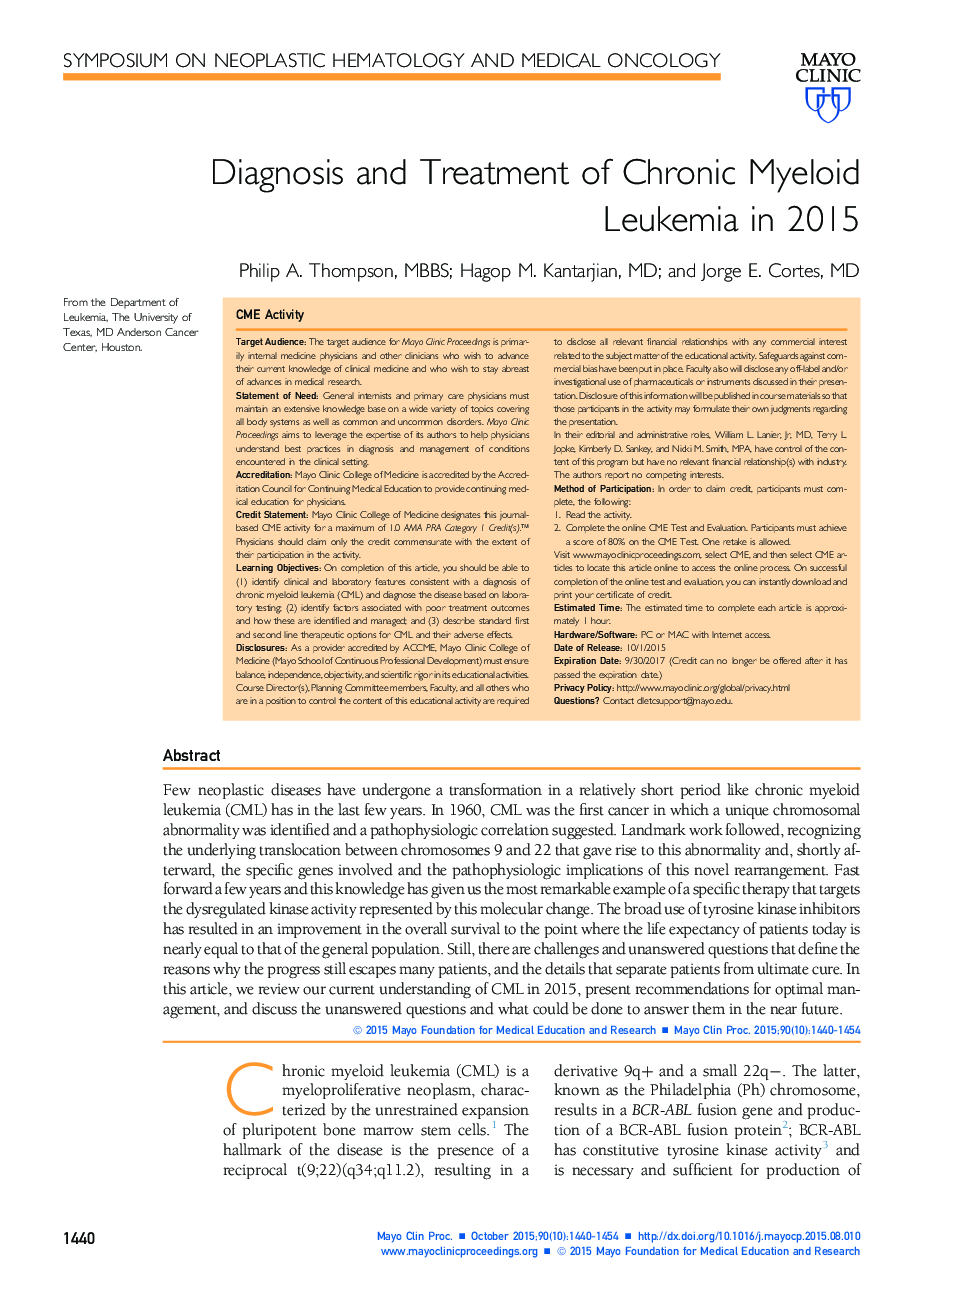 تشخیص و درمان لوسمی مزمن میلوئید در سال 2015 